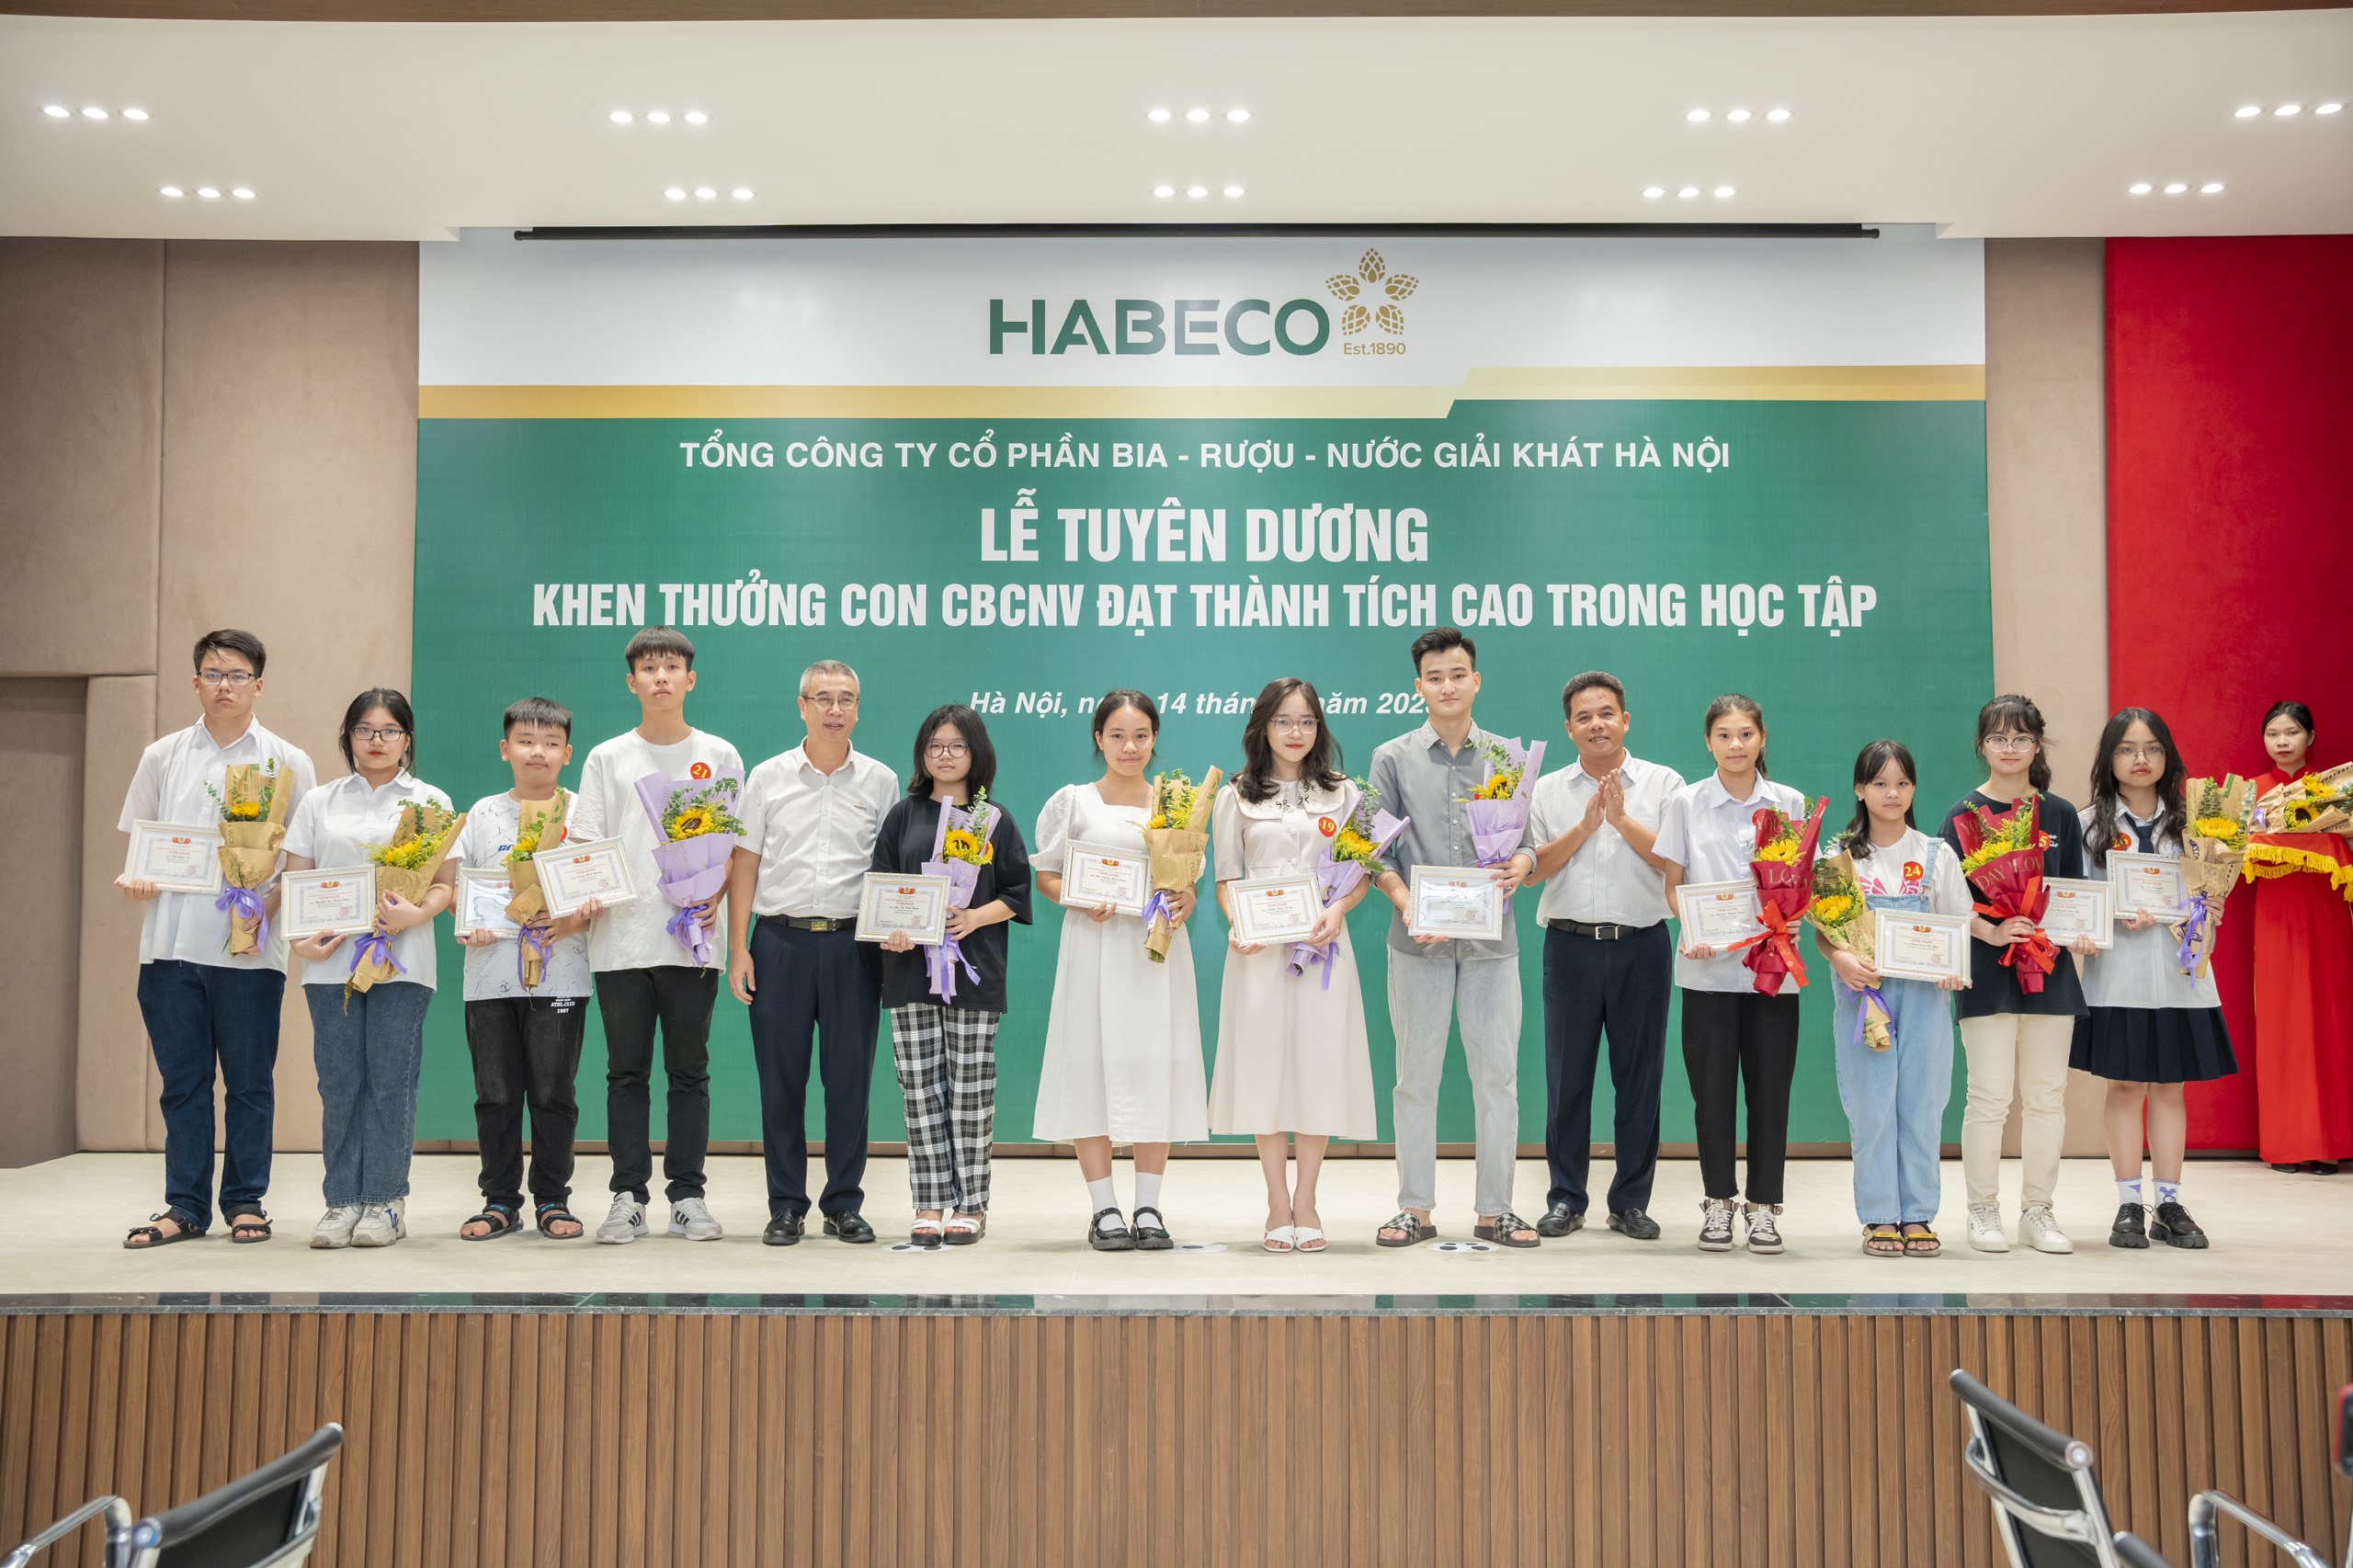 Tuyên dương khen thưởng con CBCNV HABECO đạt thành tích cao trong học tập năm 2023